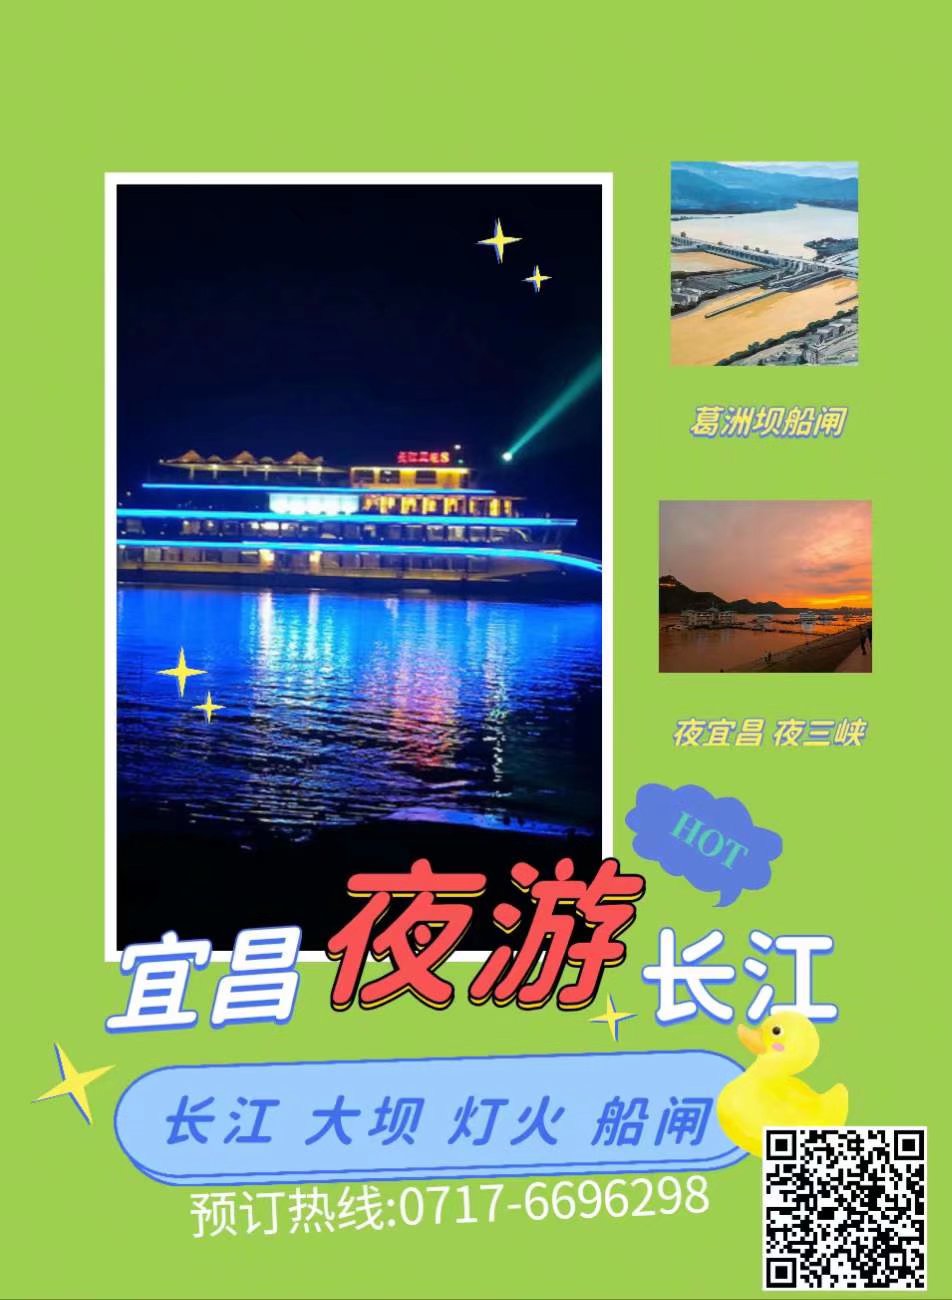 宜昌夜游起航乘坐三峡八号豪华游轮，过葛洲坝船闸，观宜昌三峡夜景